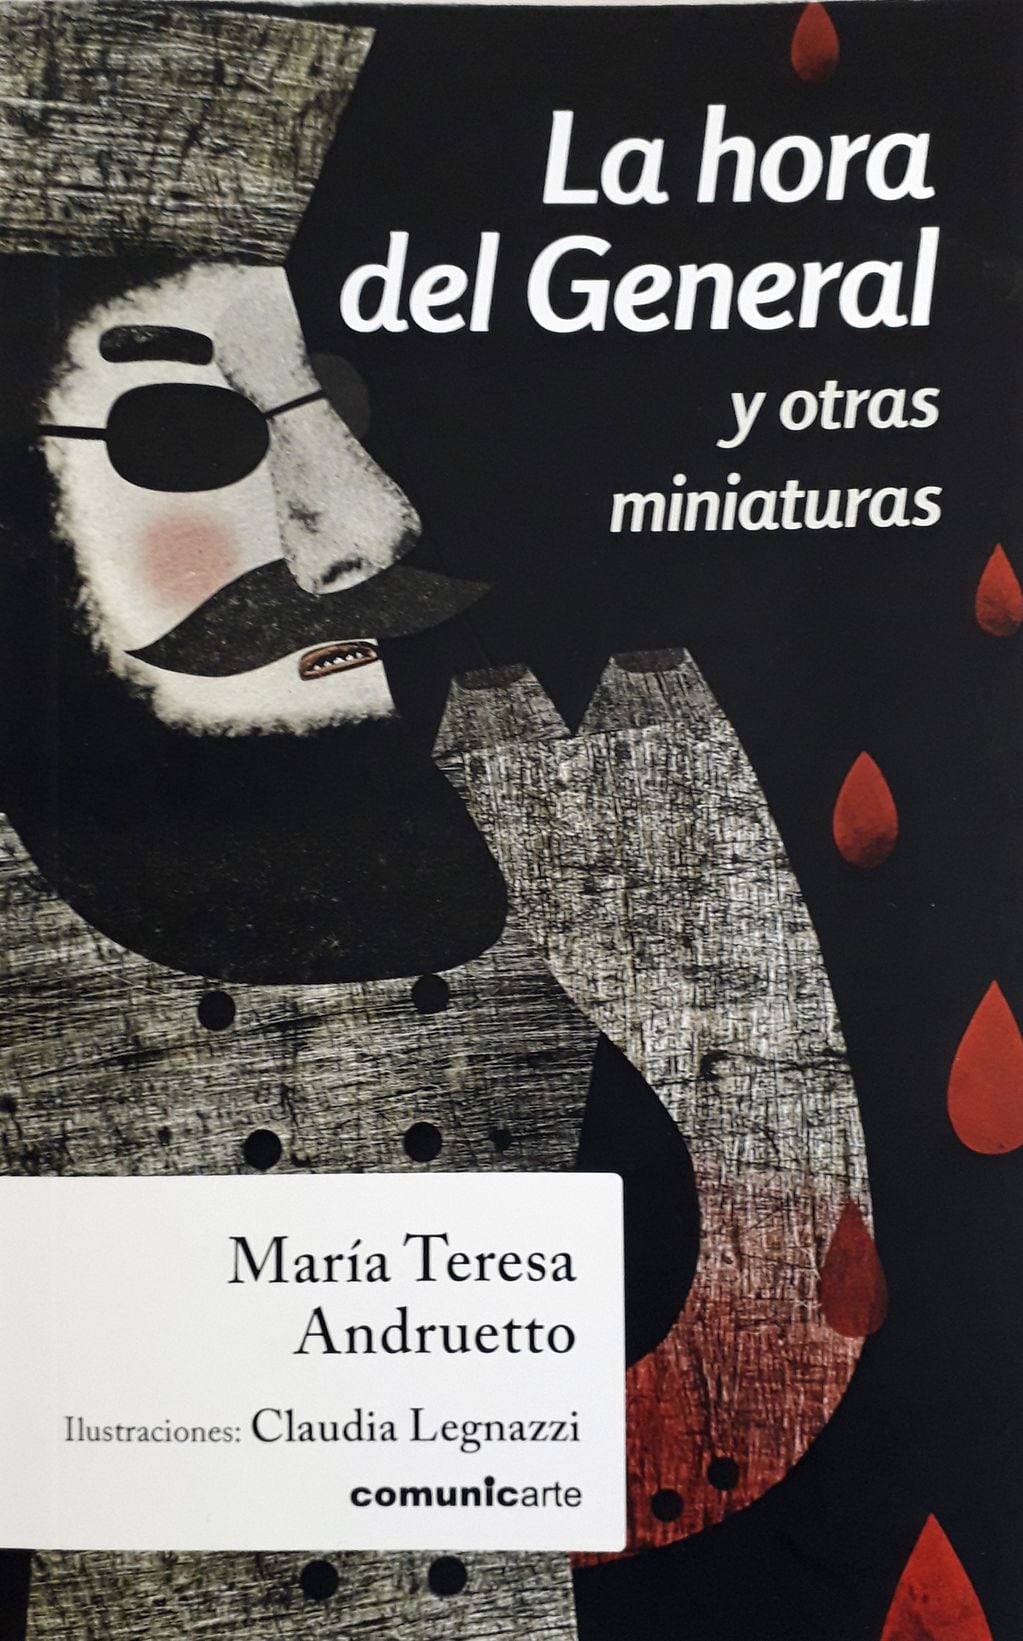 Un general cruel, un payaso triste y un dragón embriagado son algunos personajes de este libro de cuentos brevísimos de la gran escritora cordobesa María Teresa Andruetto.
